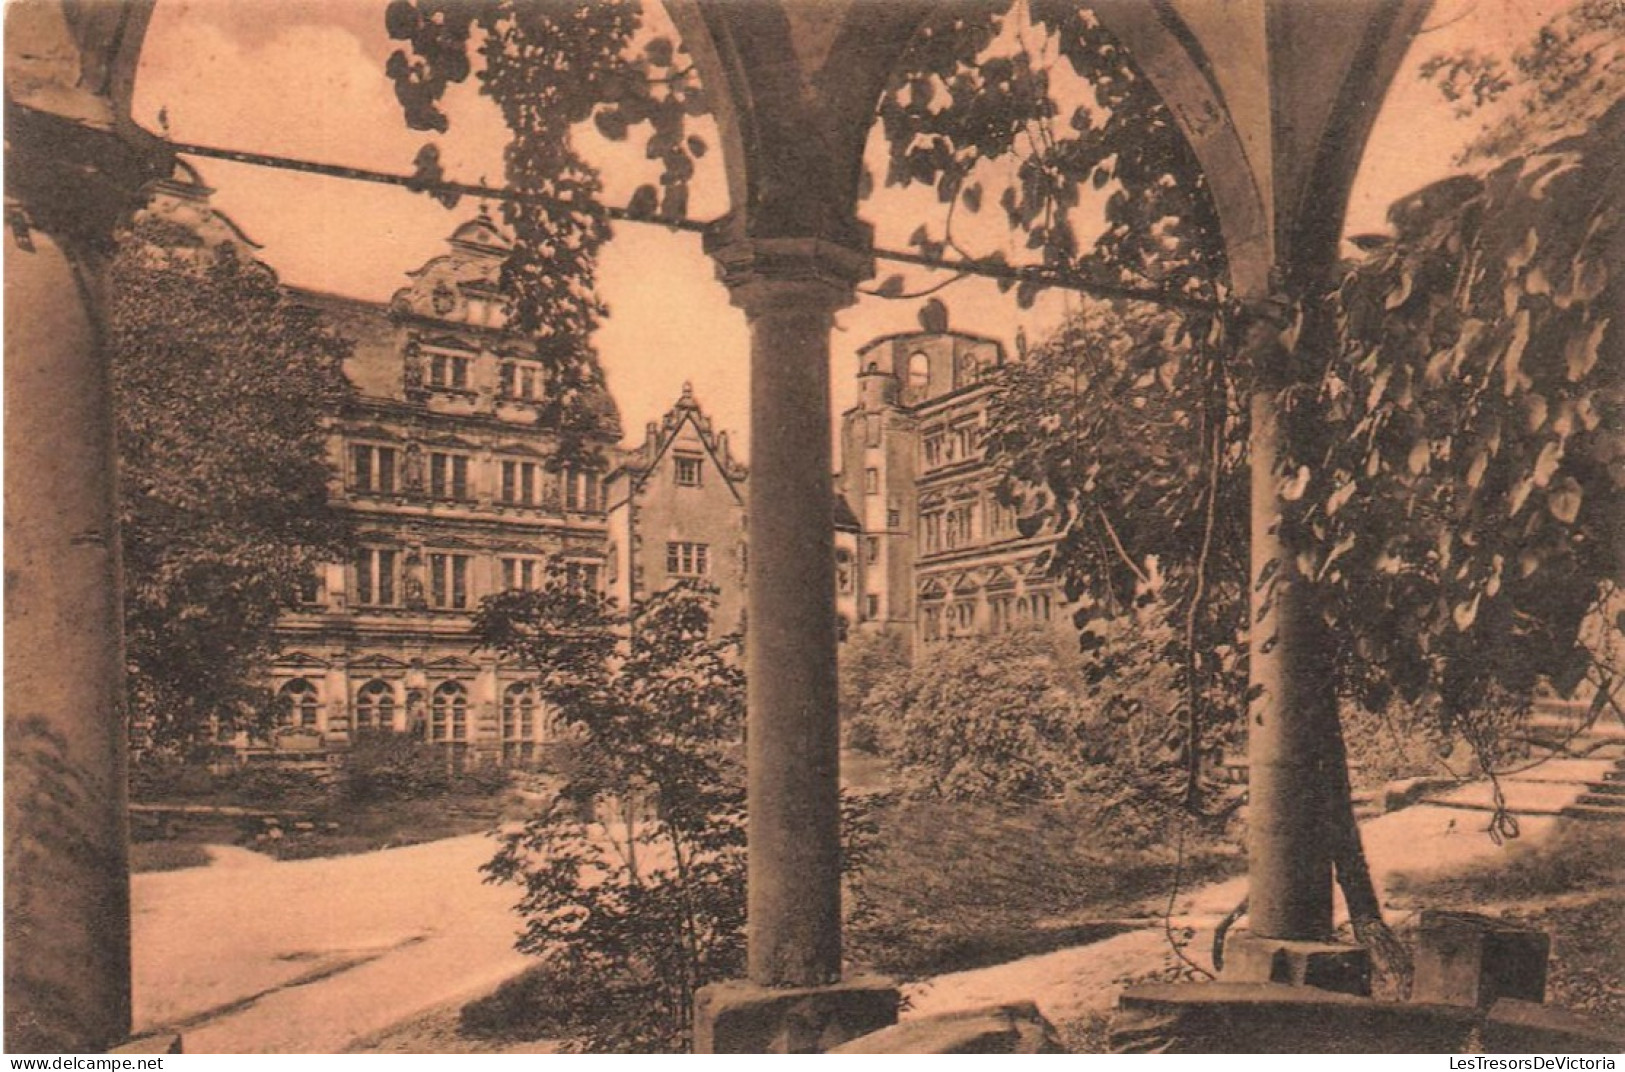 ALLEMAGNE - Heidelberg - Partie Aus Dem Heldelberger Schlosshof Von Der Brunnenhalle Gesehen - Carte Postale Ancienne - Heidelberg